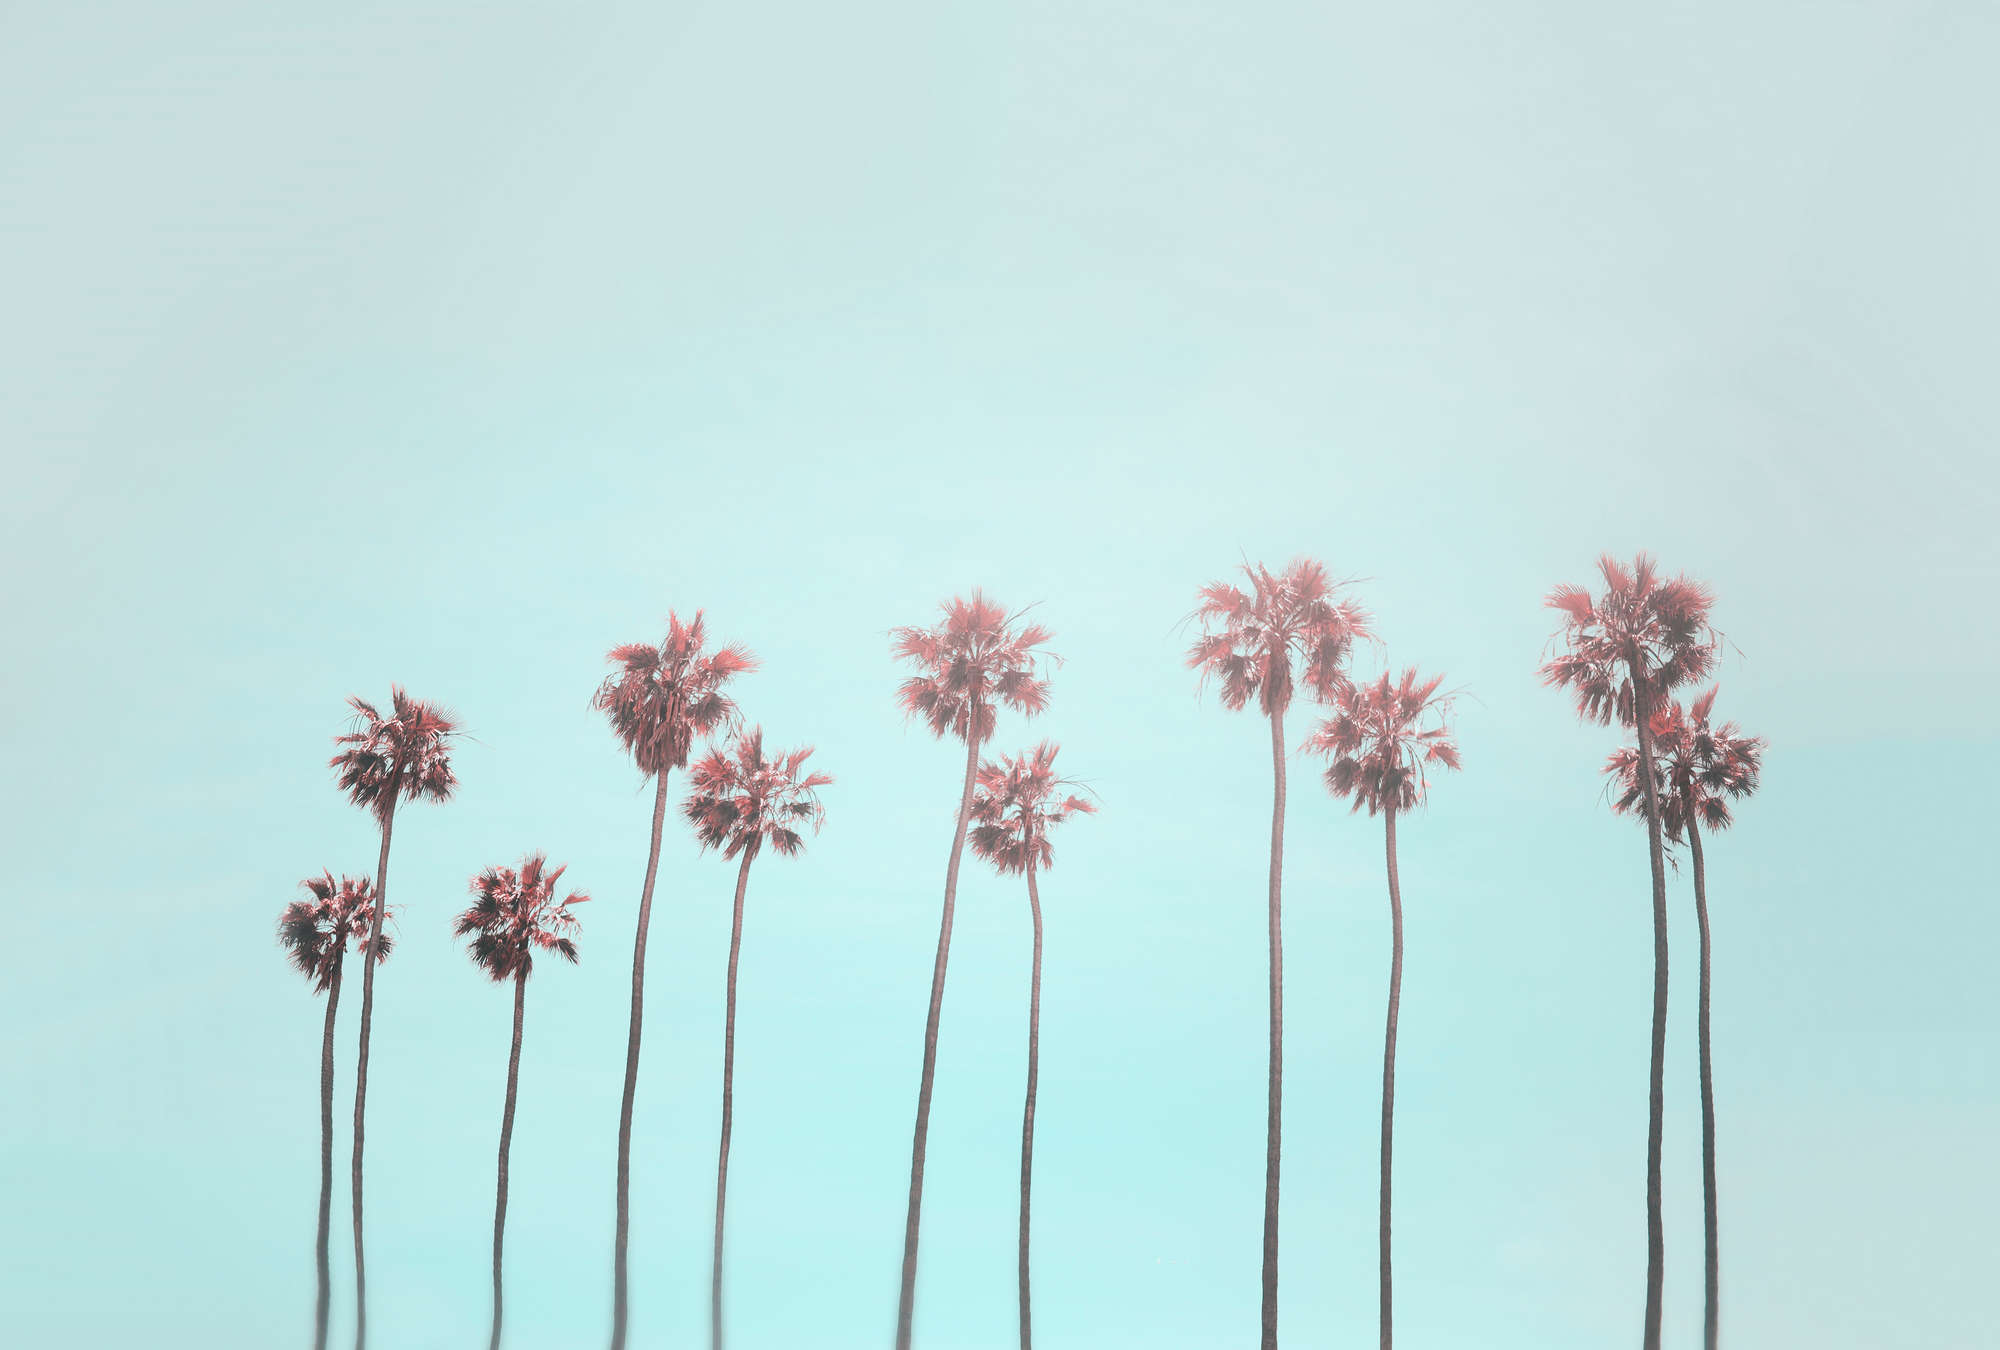             Palmbomen & luchtschildering voor een strandgevoel in turquoise & roze
        